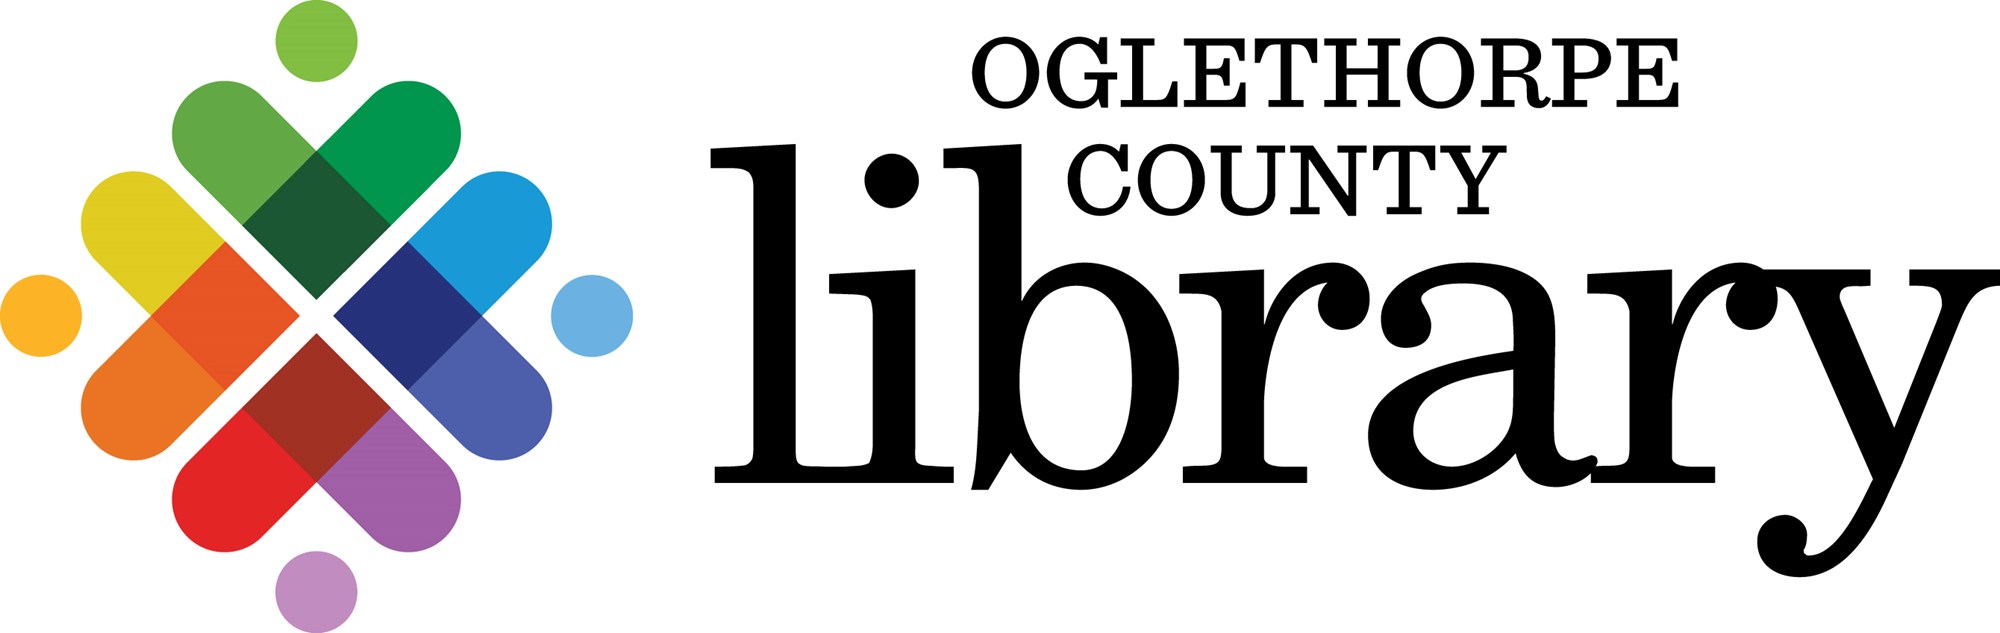 Oglethorpe County Library